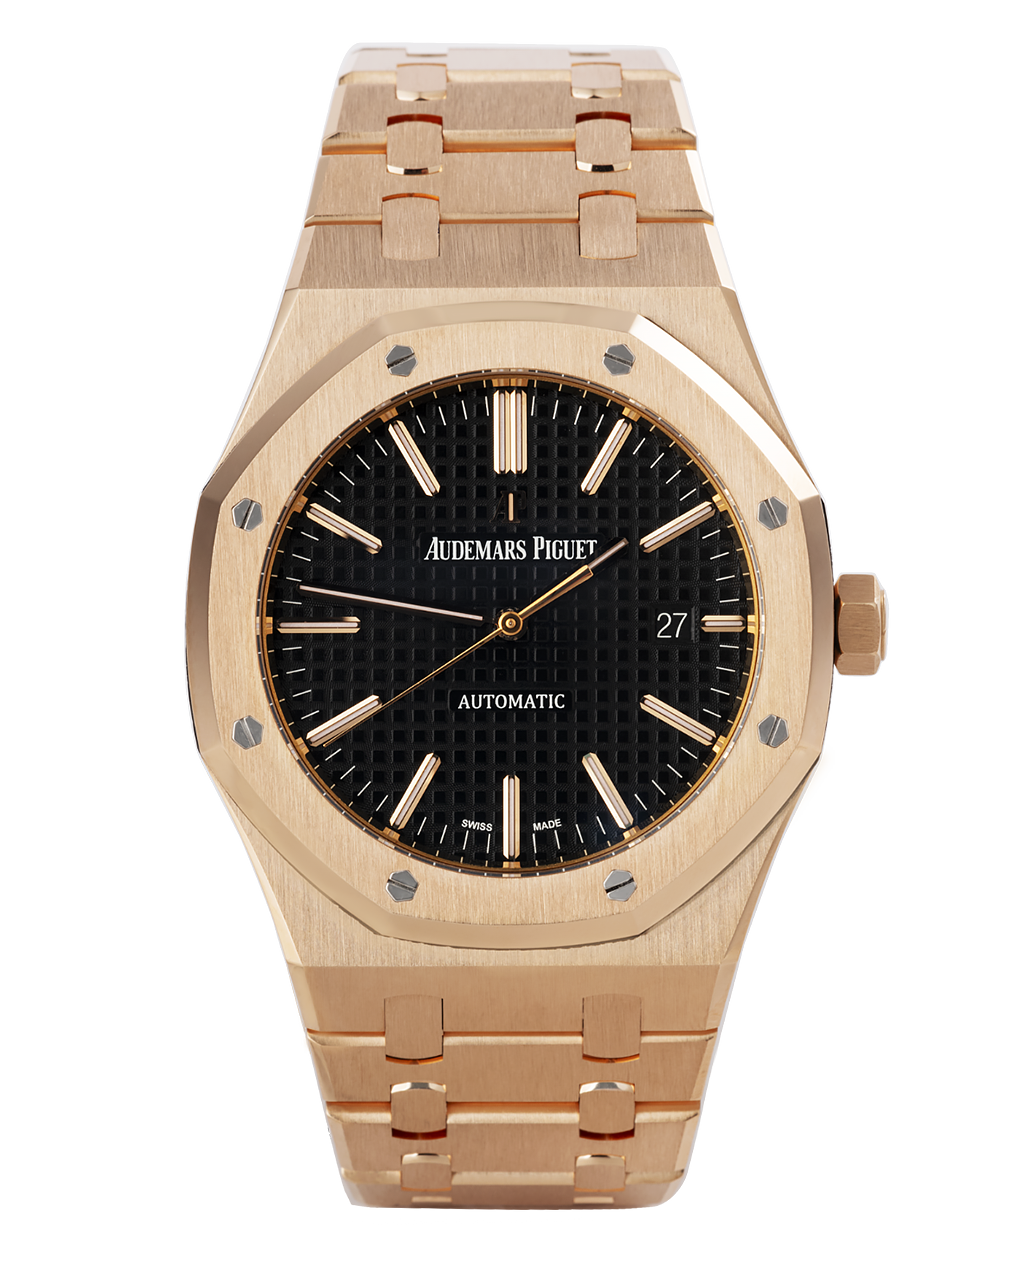 Audemars Piguet Royal Oak Watches | ref 15400OR.OO.D002CR.01 | 15400OR ...